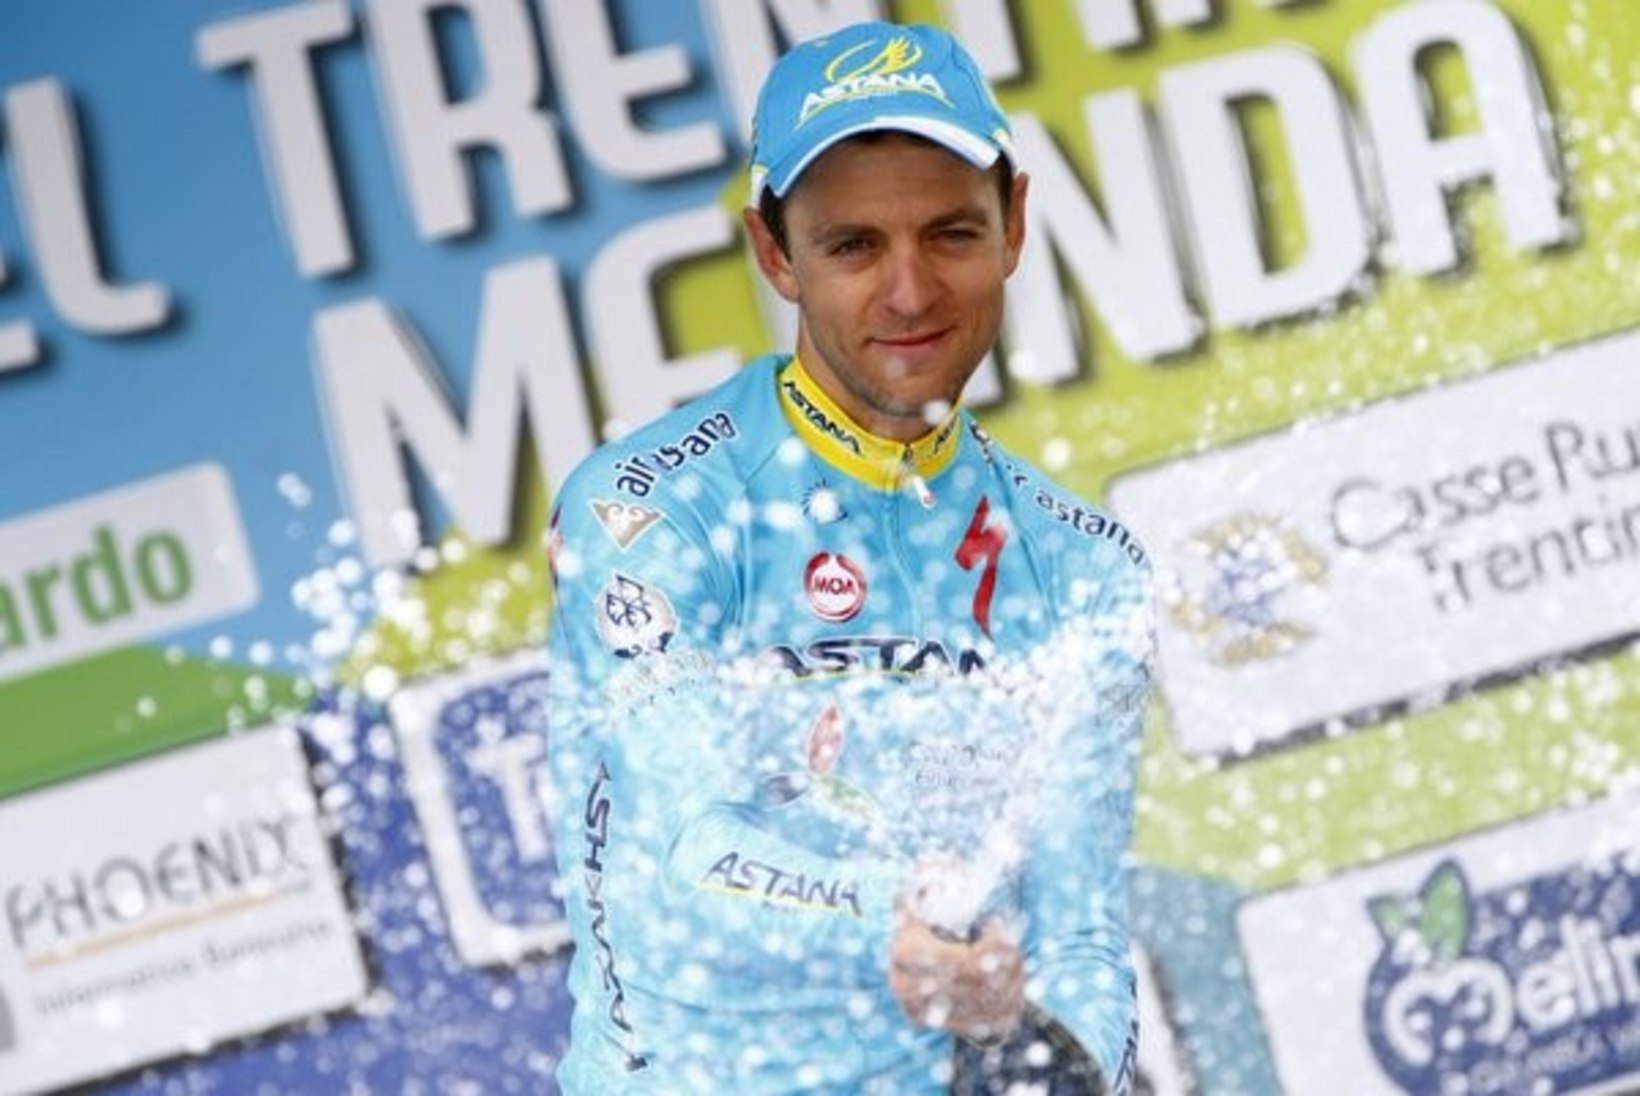 VÕIDUFINIŠI VIDEO | Tanel Kangert võitis Trentino velotuuri viimase etapi, kuid jäi üldarvestuses teiseks